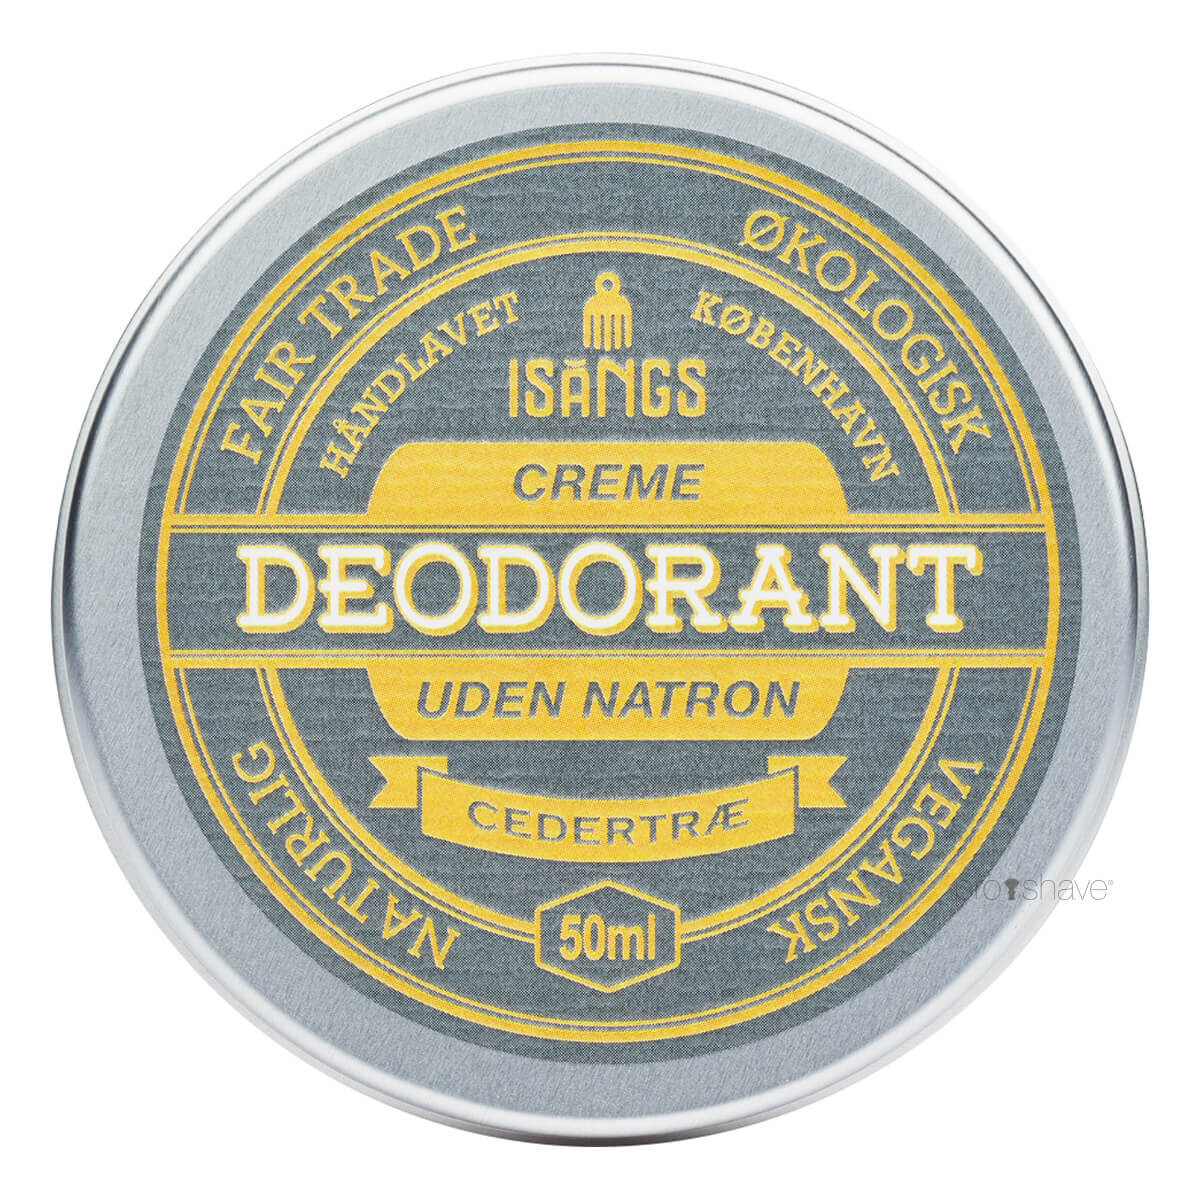 Billede af Isangs Creme Deodorant uden Natron, Cedertræ, 50 ml.